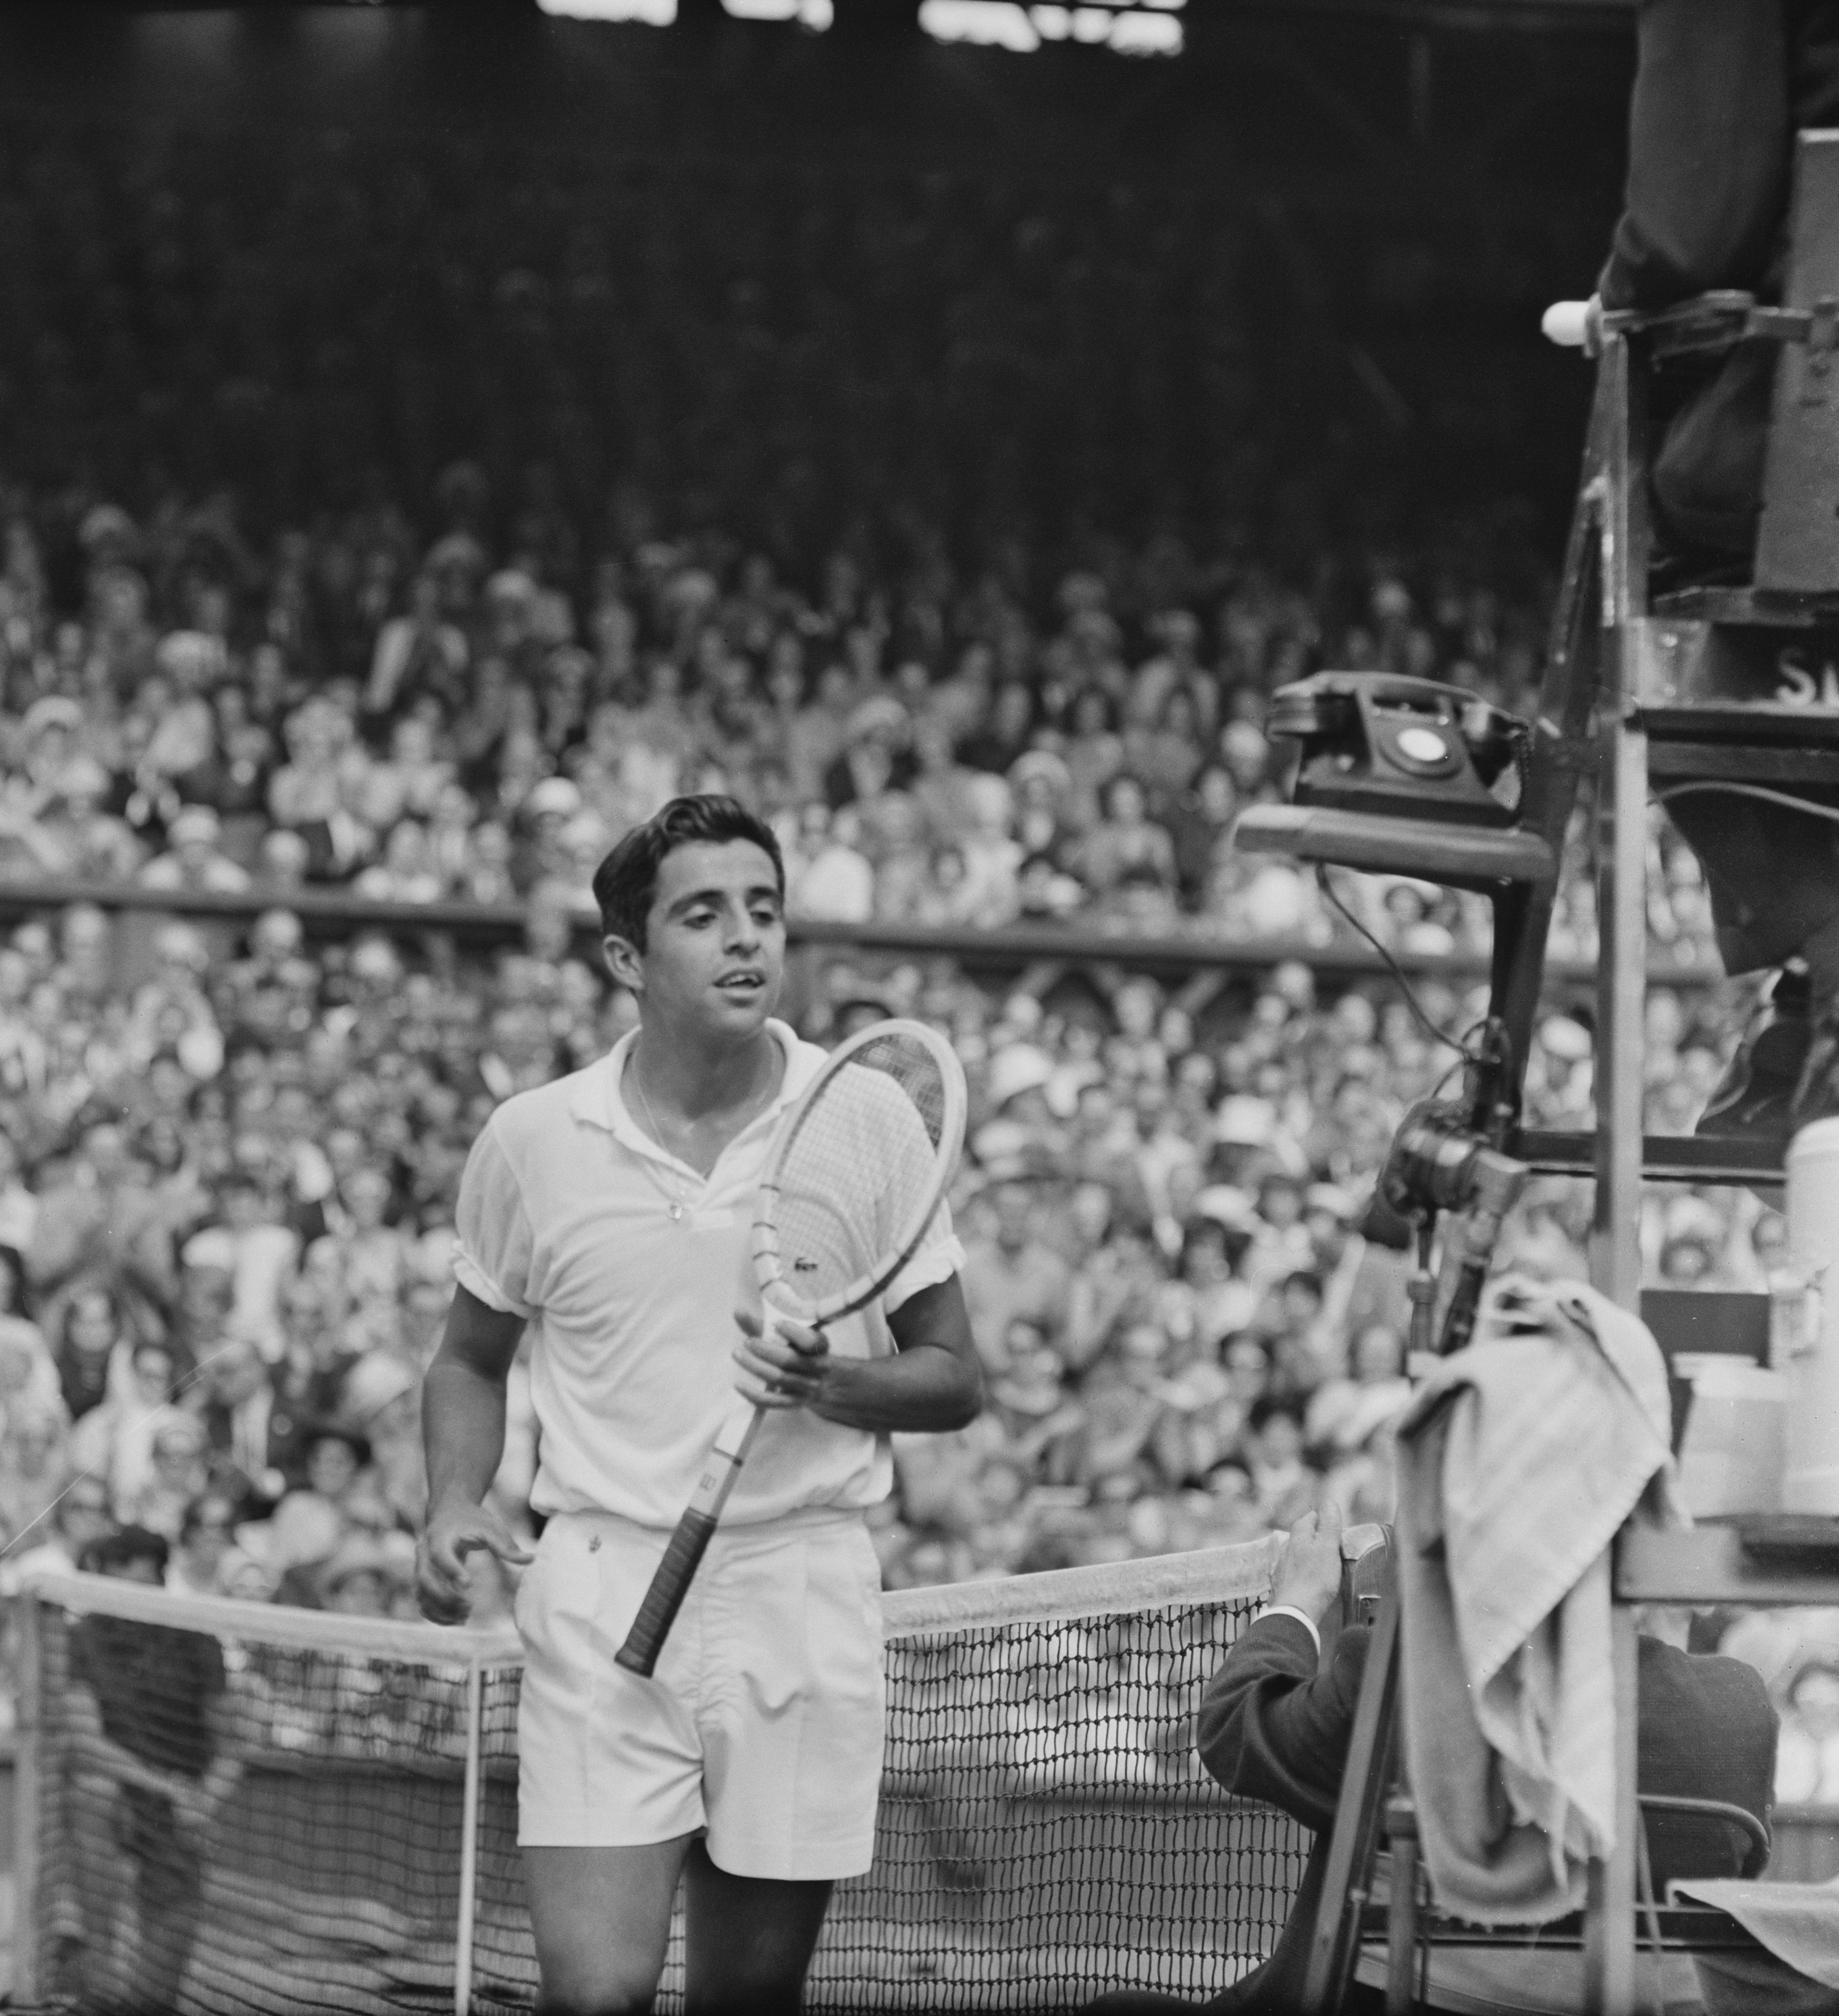 Manuel Martìnez Santana, detto Manolo, nato a Madrid, classe 1938, ha vinto 4 titoli dello Slam di cui uno storico a Wimbledon, fu il primo iberico a riuscirci